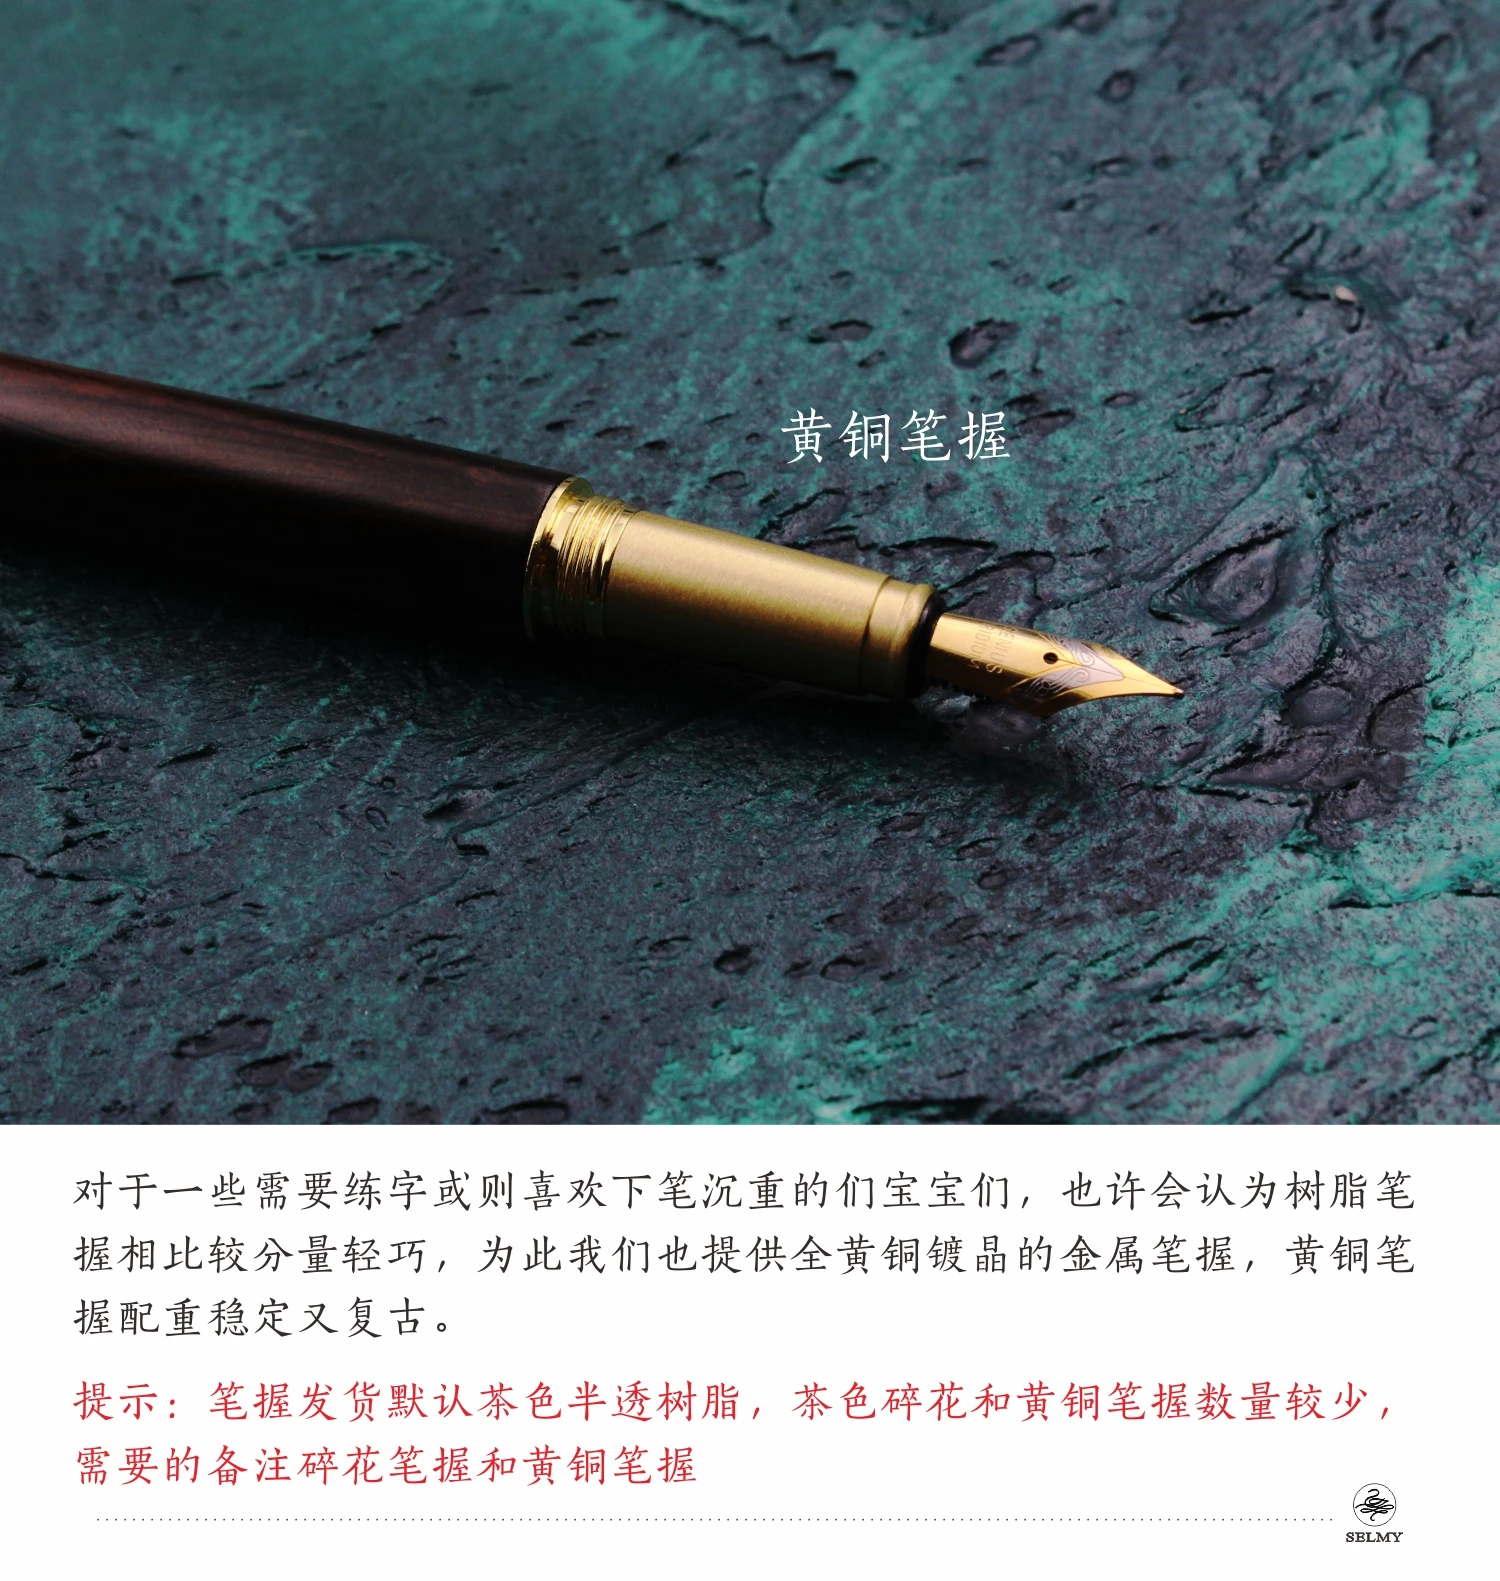 Перьевая ручка ручной работы из цельного дерева, старинная НЕОБРАБОТАННАЯ сандаловая ручка для каллиграфии, подарки для студентов